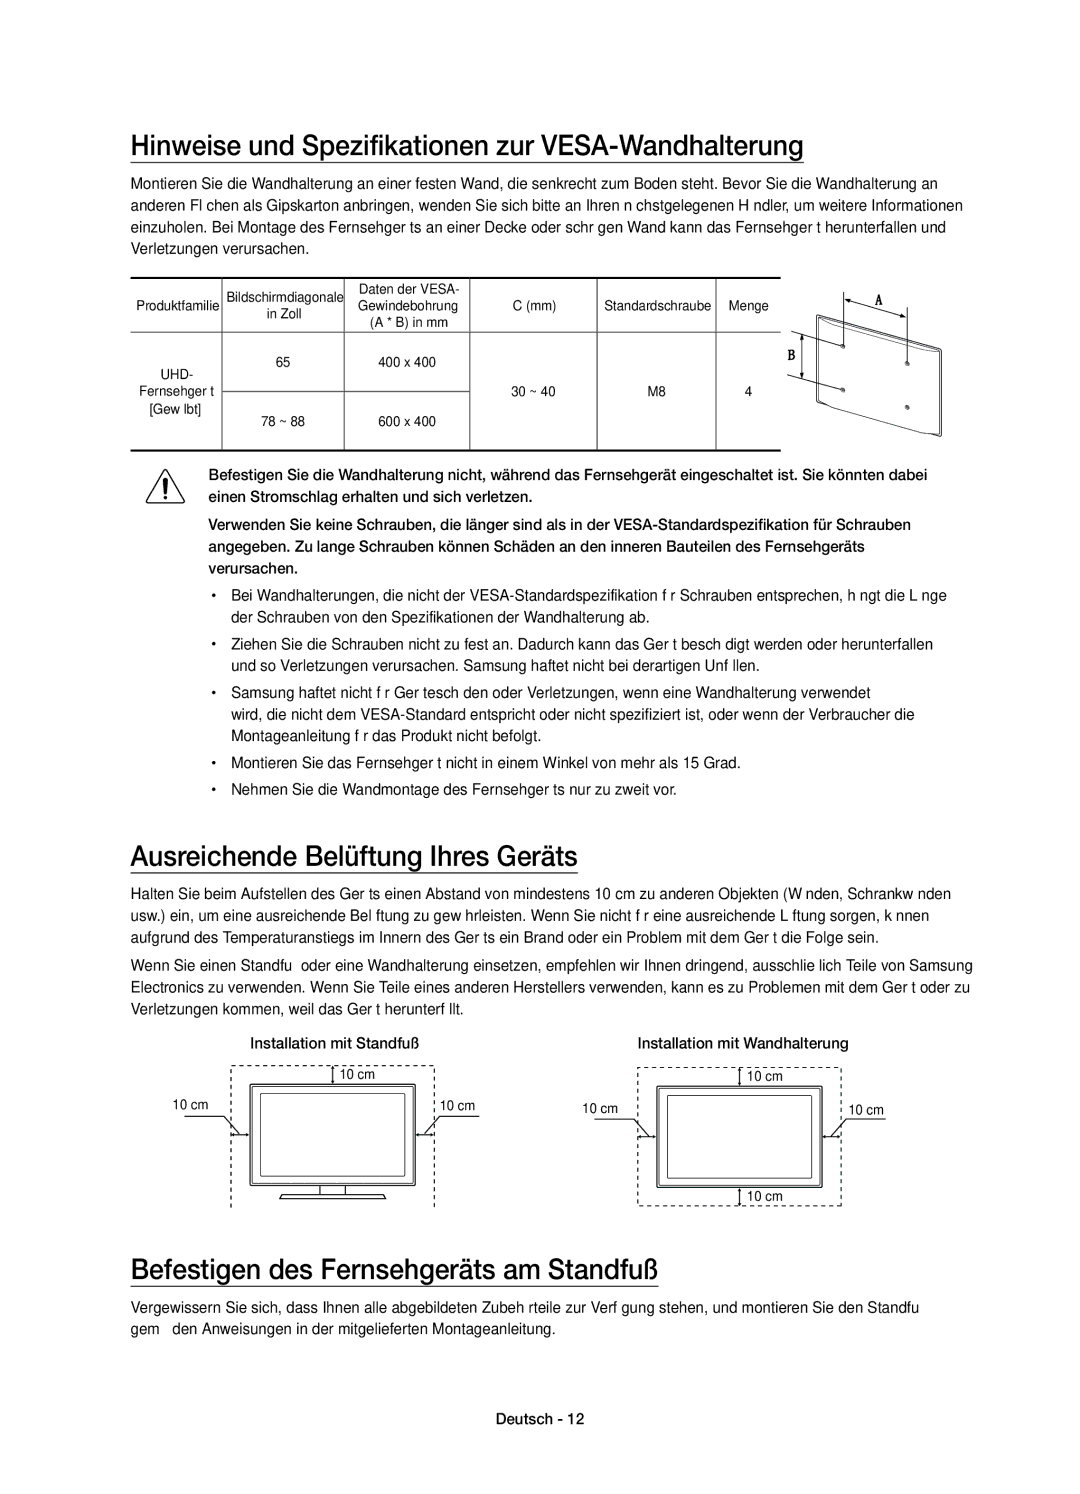 Samsung UE88JS9590QXZG manual Hinweise und Spezifikationen zur VESA-Wandhalterung, Ausreichende Belüftung Ihres Geräts 